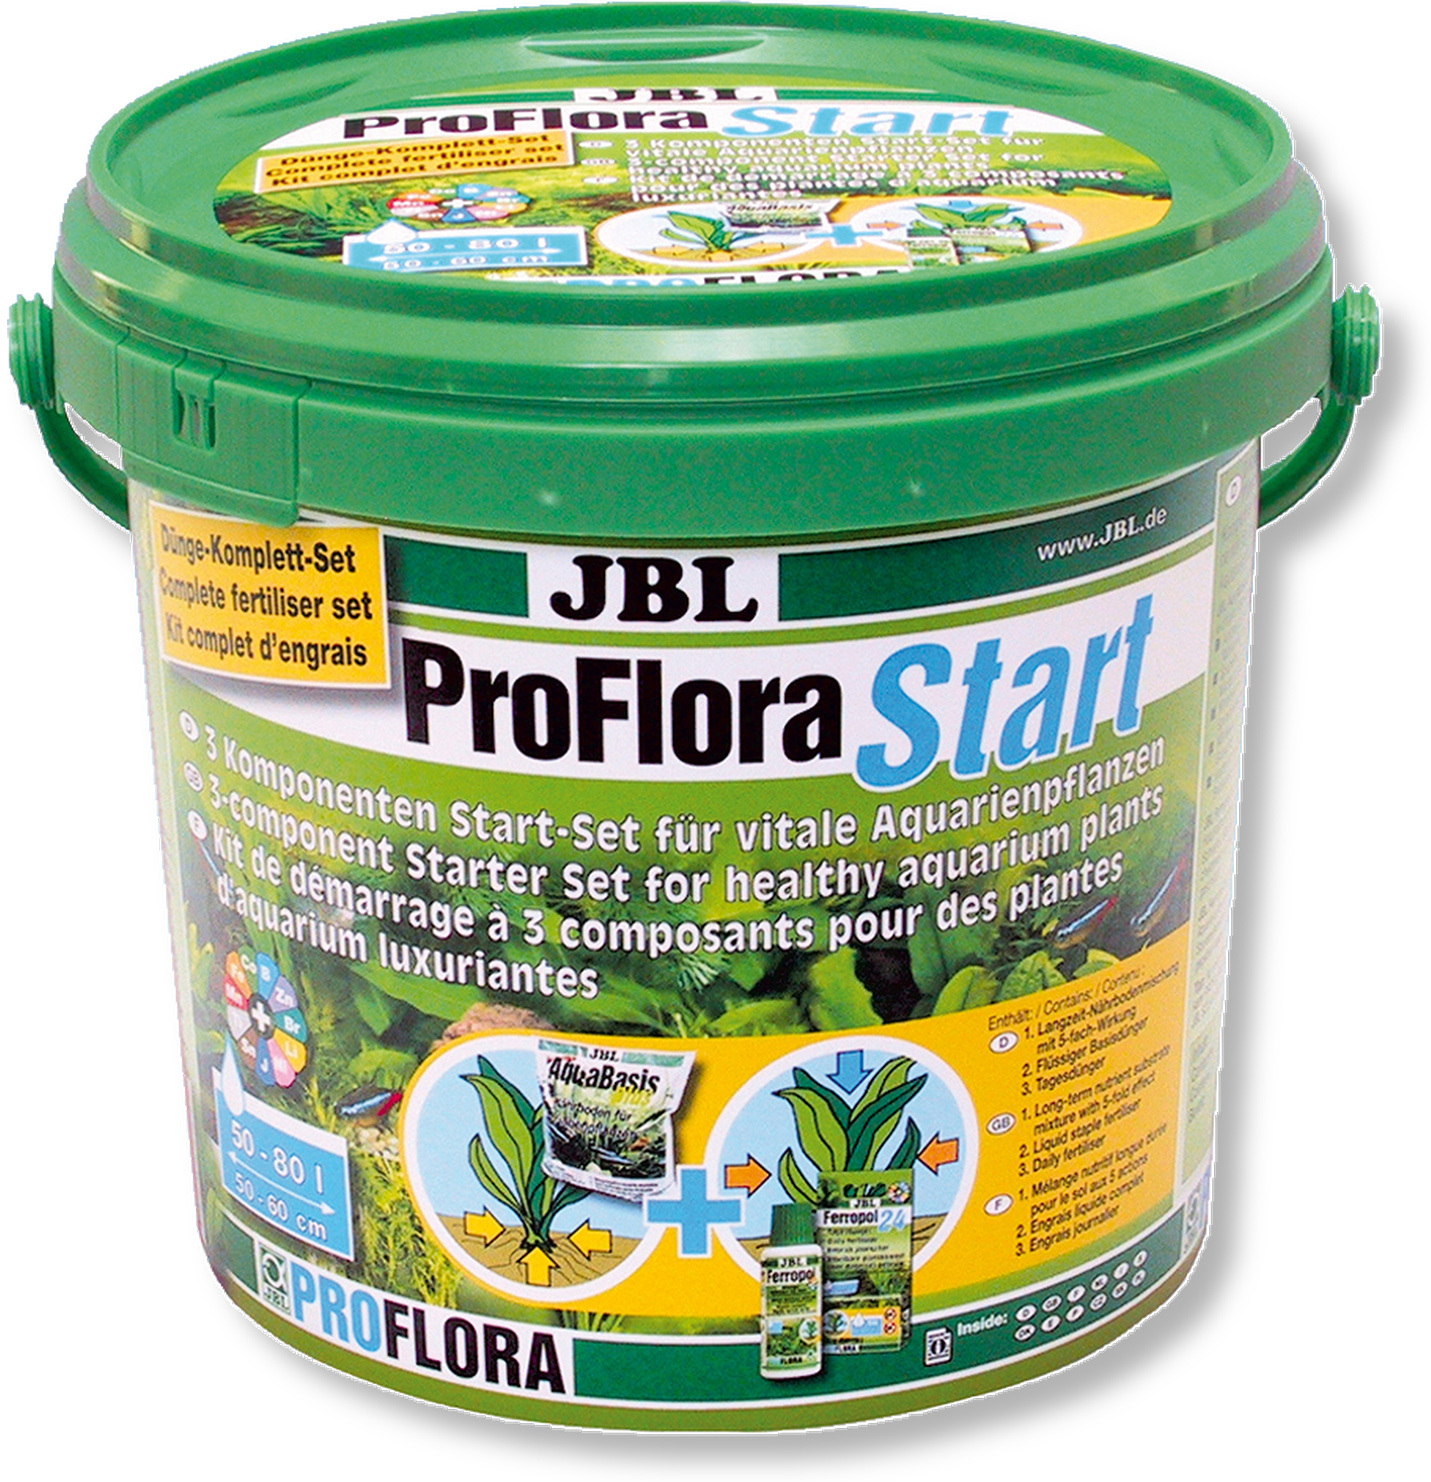 JBL ProfloraStart Set 100 fertilizator pentru plante